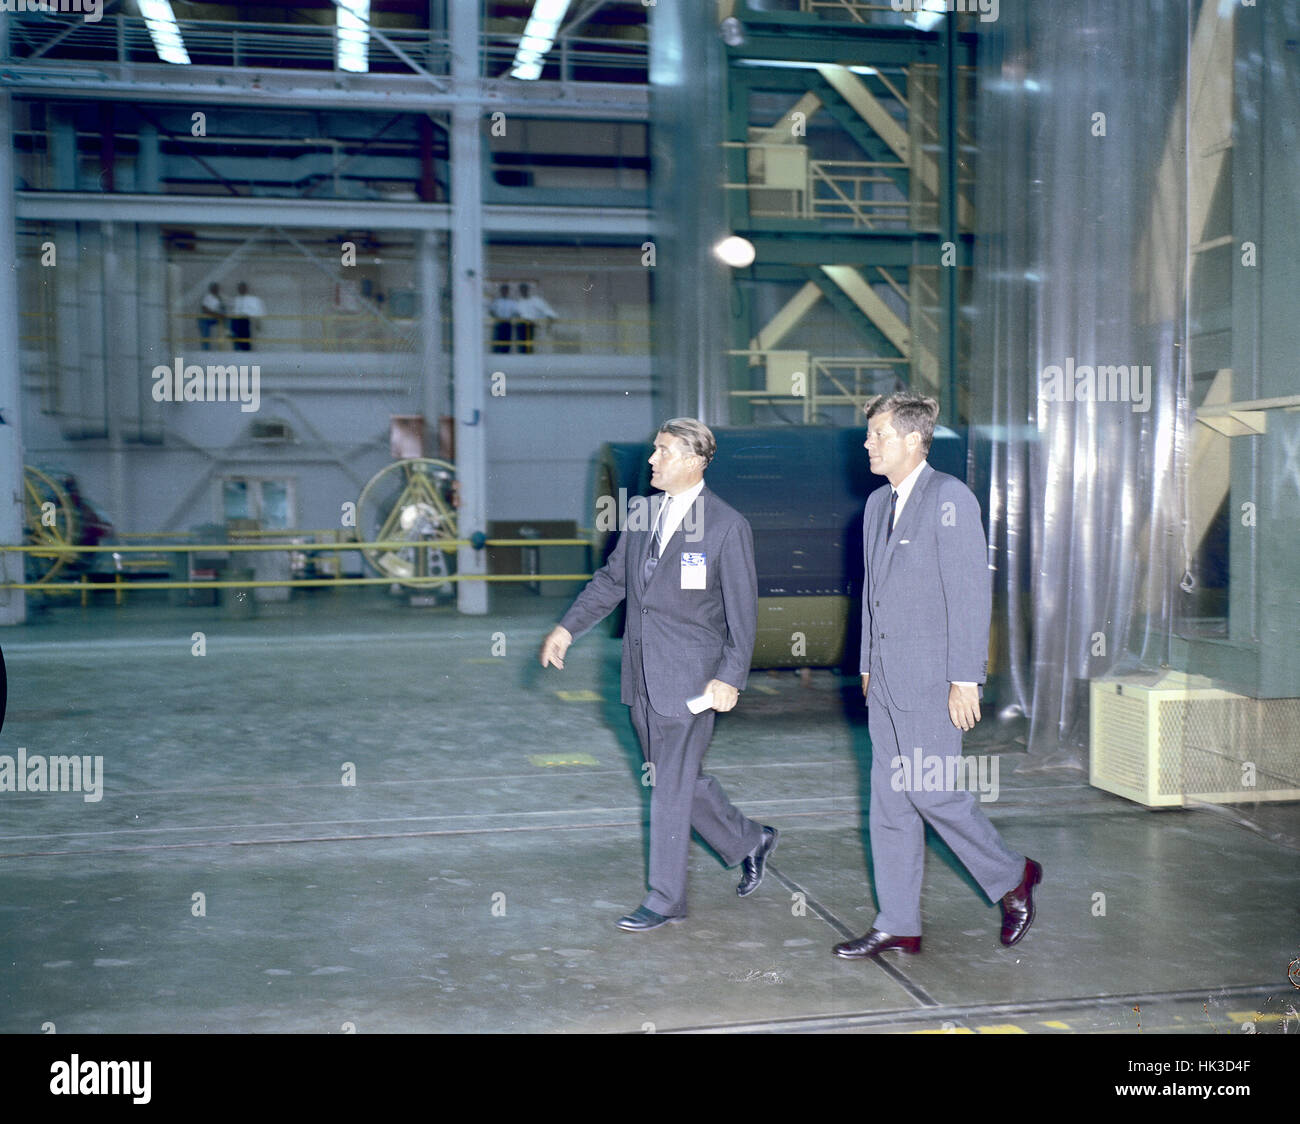 US-Präsident John F. Kennedy besuchte Marshall Space Flight Center (MSFC) in Huntsville, Alabama am 11. September 1962. Präsident Kennedy und Dr. Wernher von Braun, MSFC Direktor tour hier eines der Labore... Stockfoto